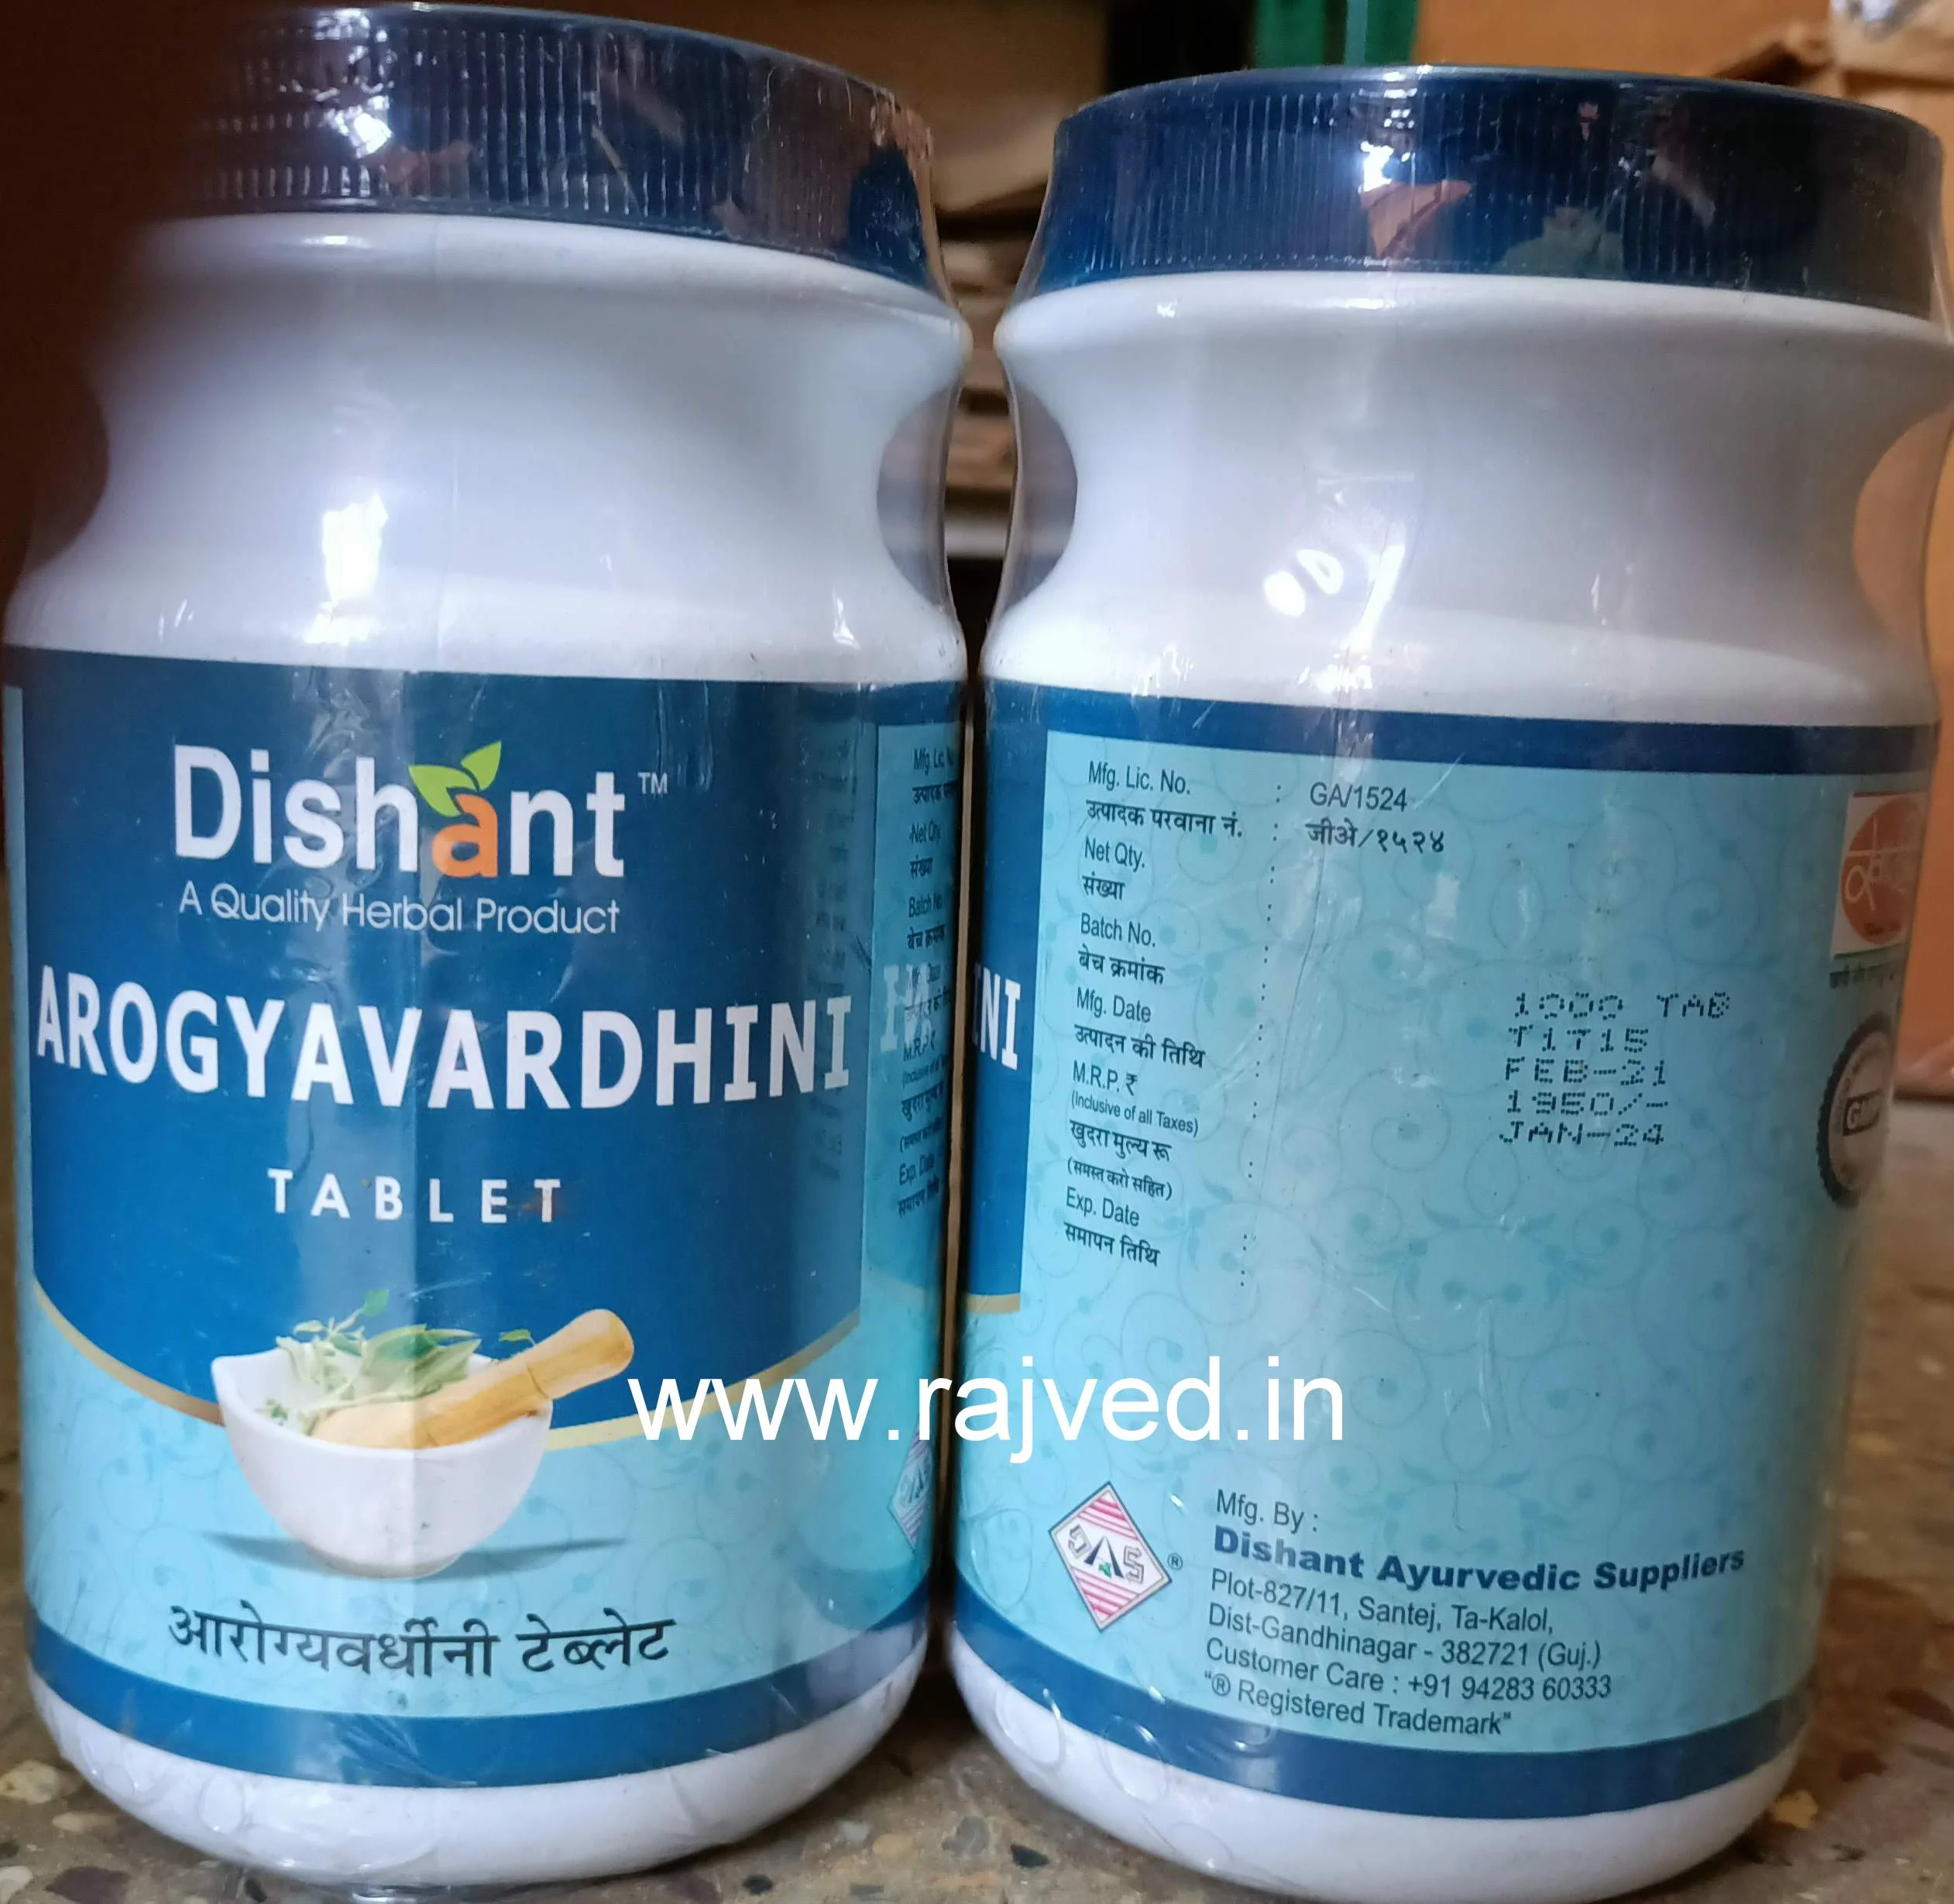 arogyavardhini tablets 500 gm upto 20% off dishant ayurvedic suppliers